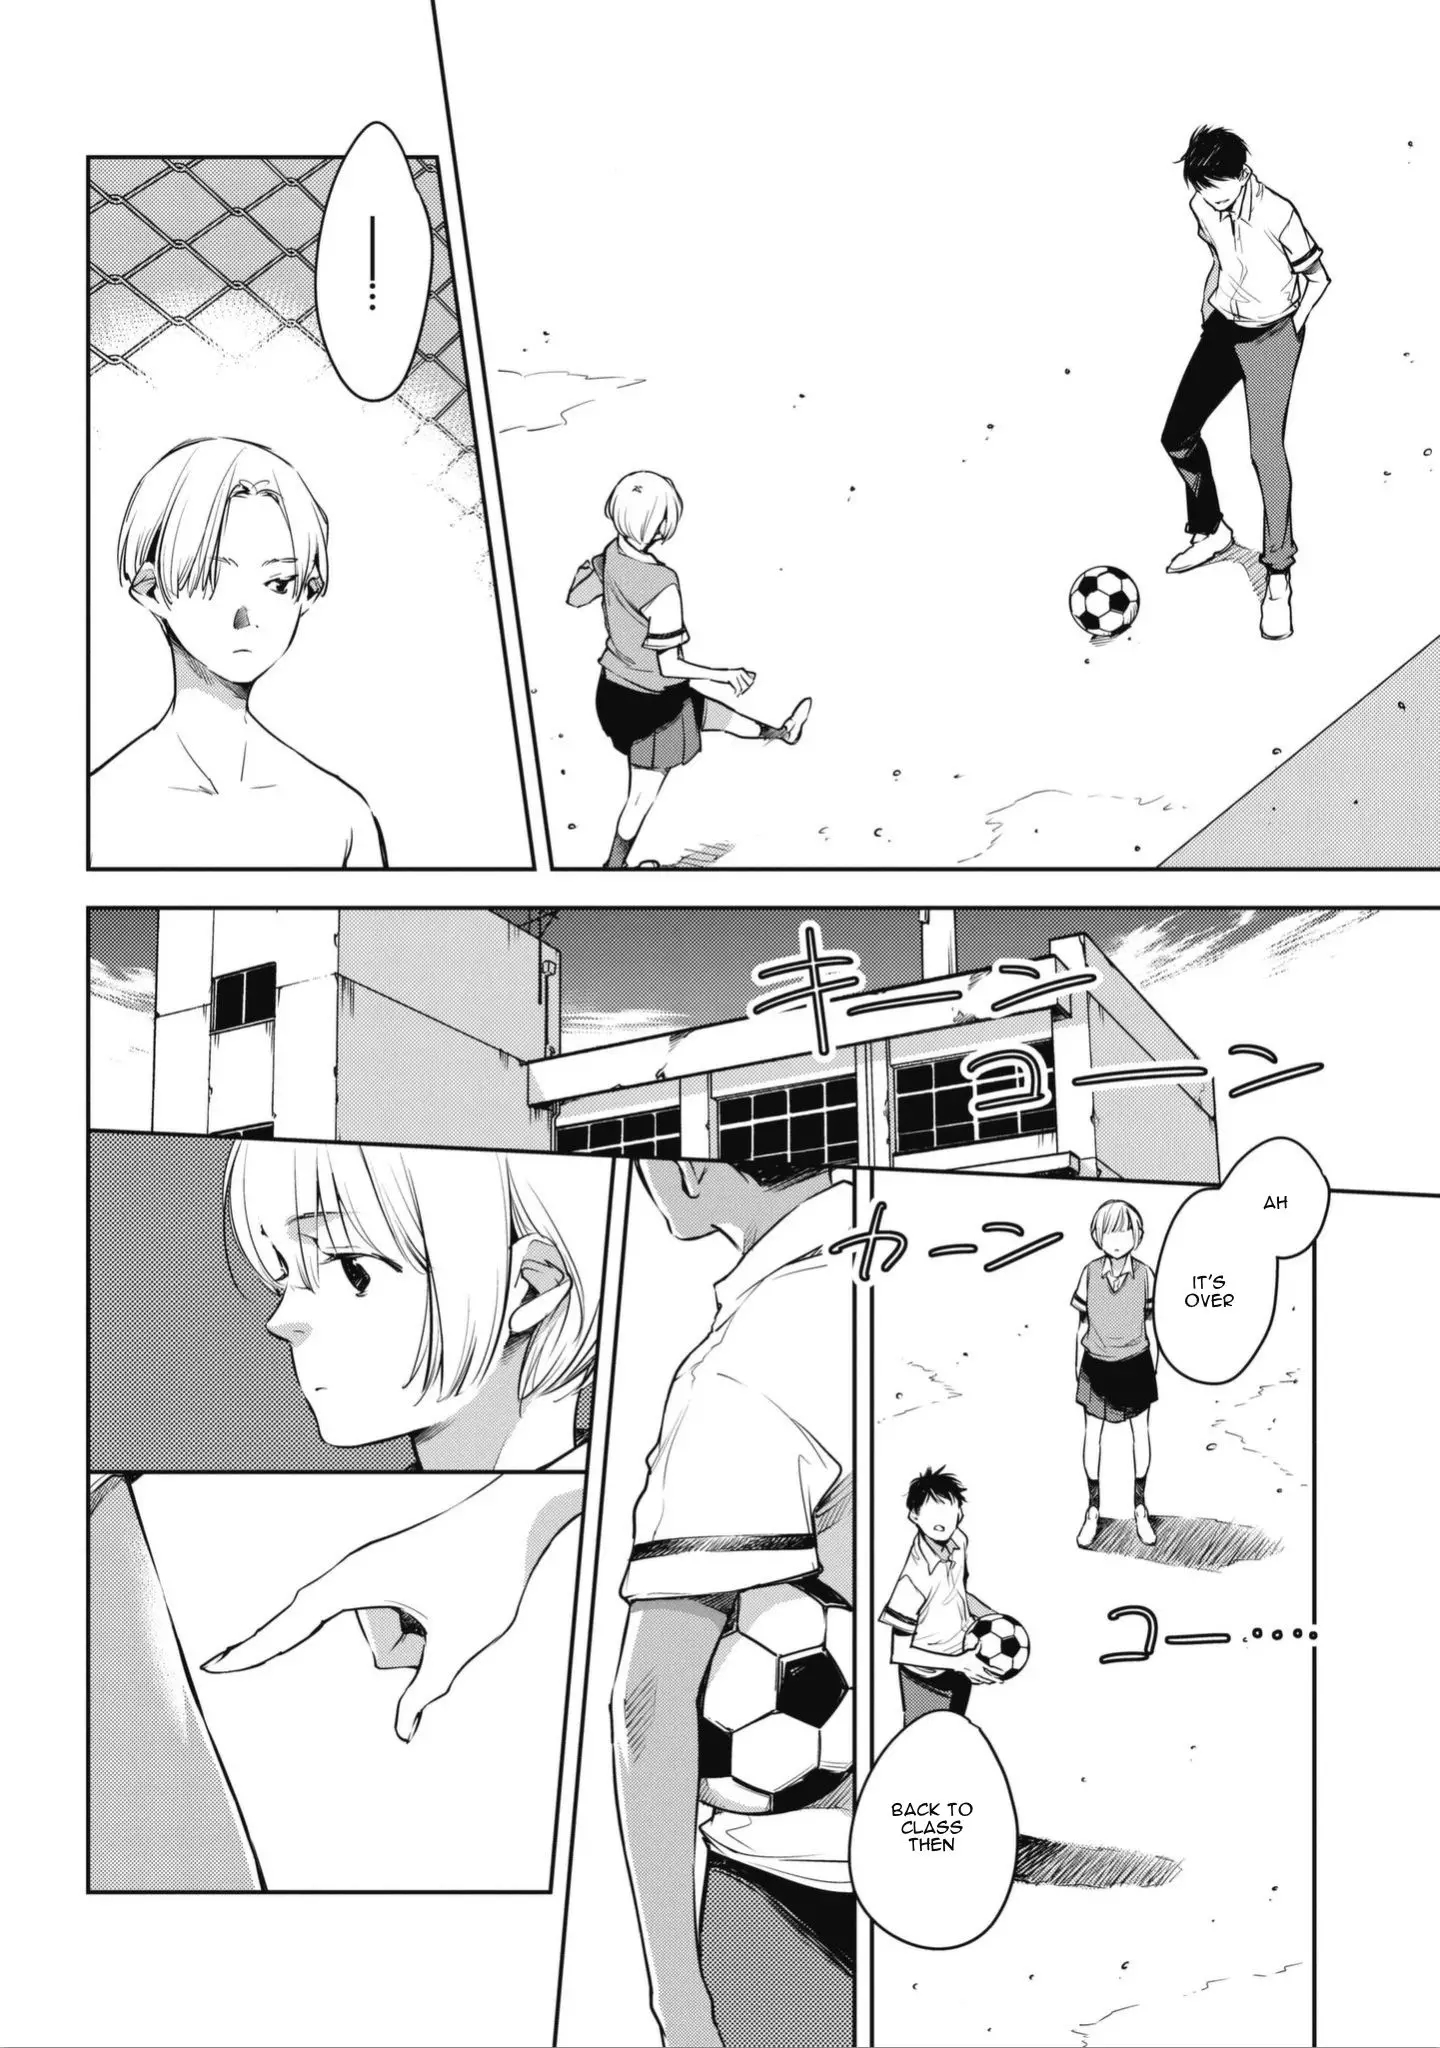 Okashiratsuki - 1 page 18